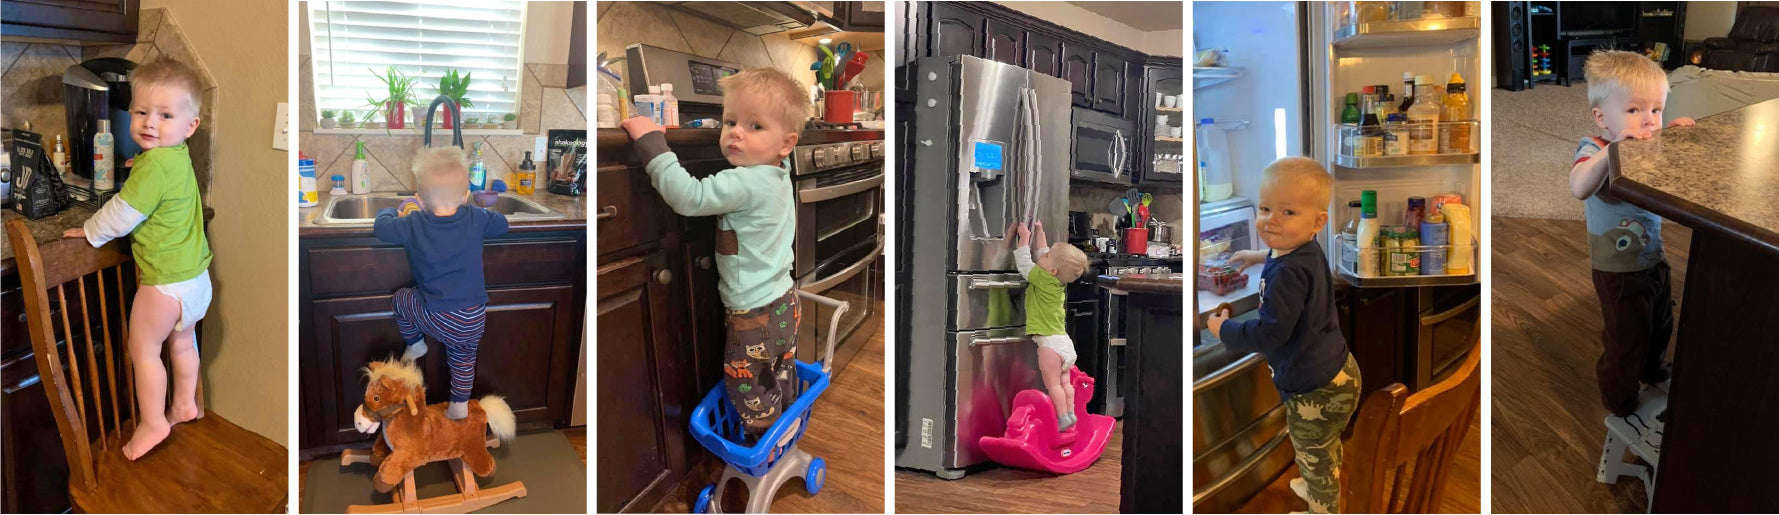 Una serie de imágenes que muestran a un niño pequeño trepándose a sillas de cocina, taburetes, caballitos y juguetes para poder alcanzar el mostrador.